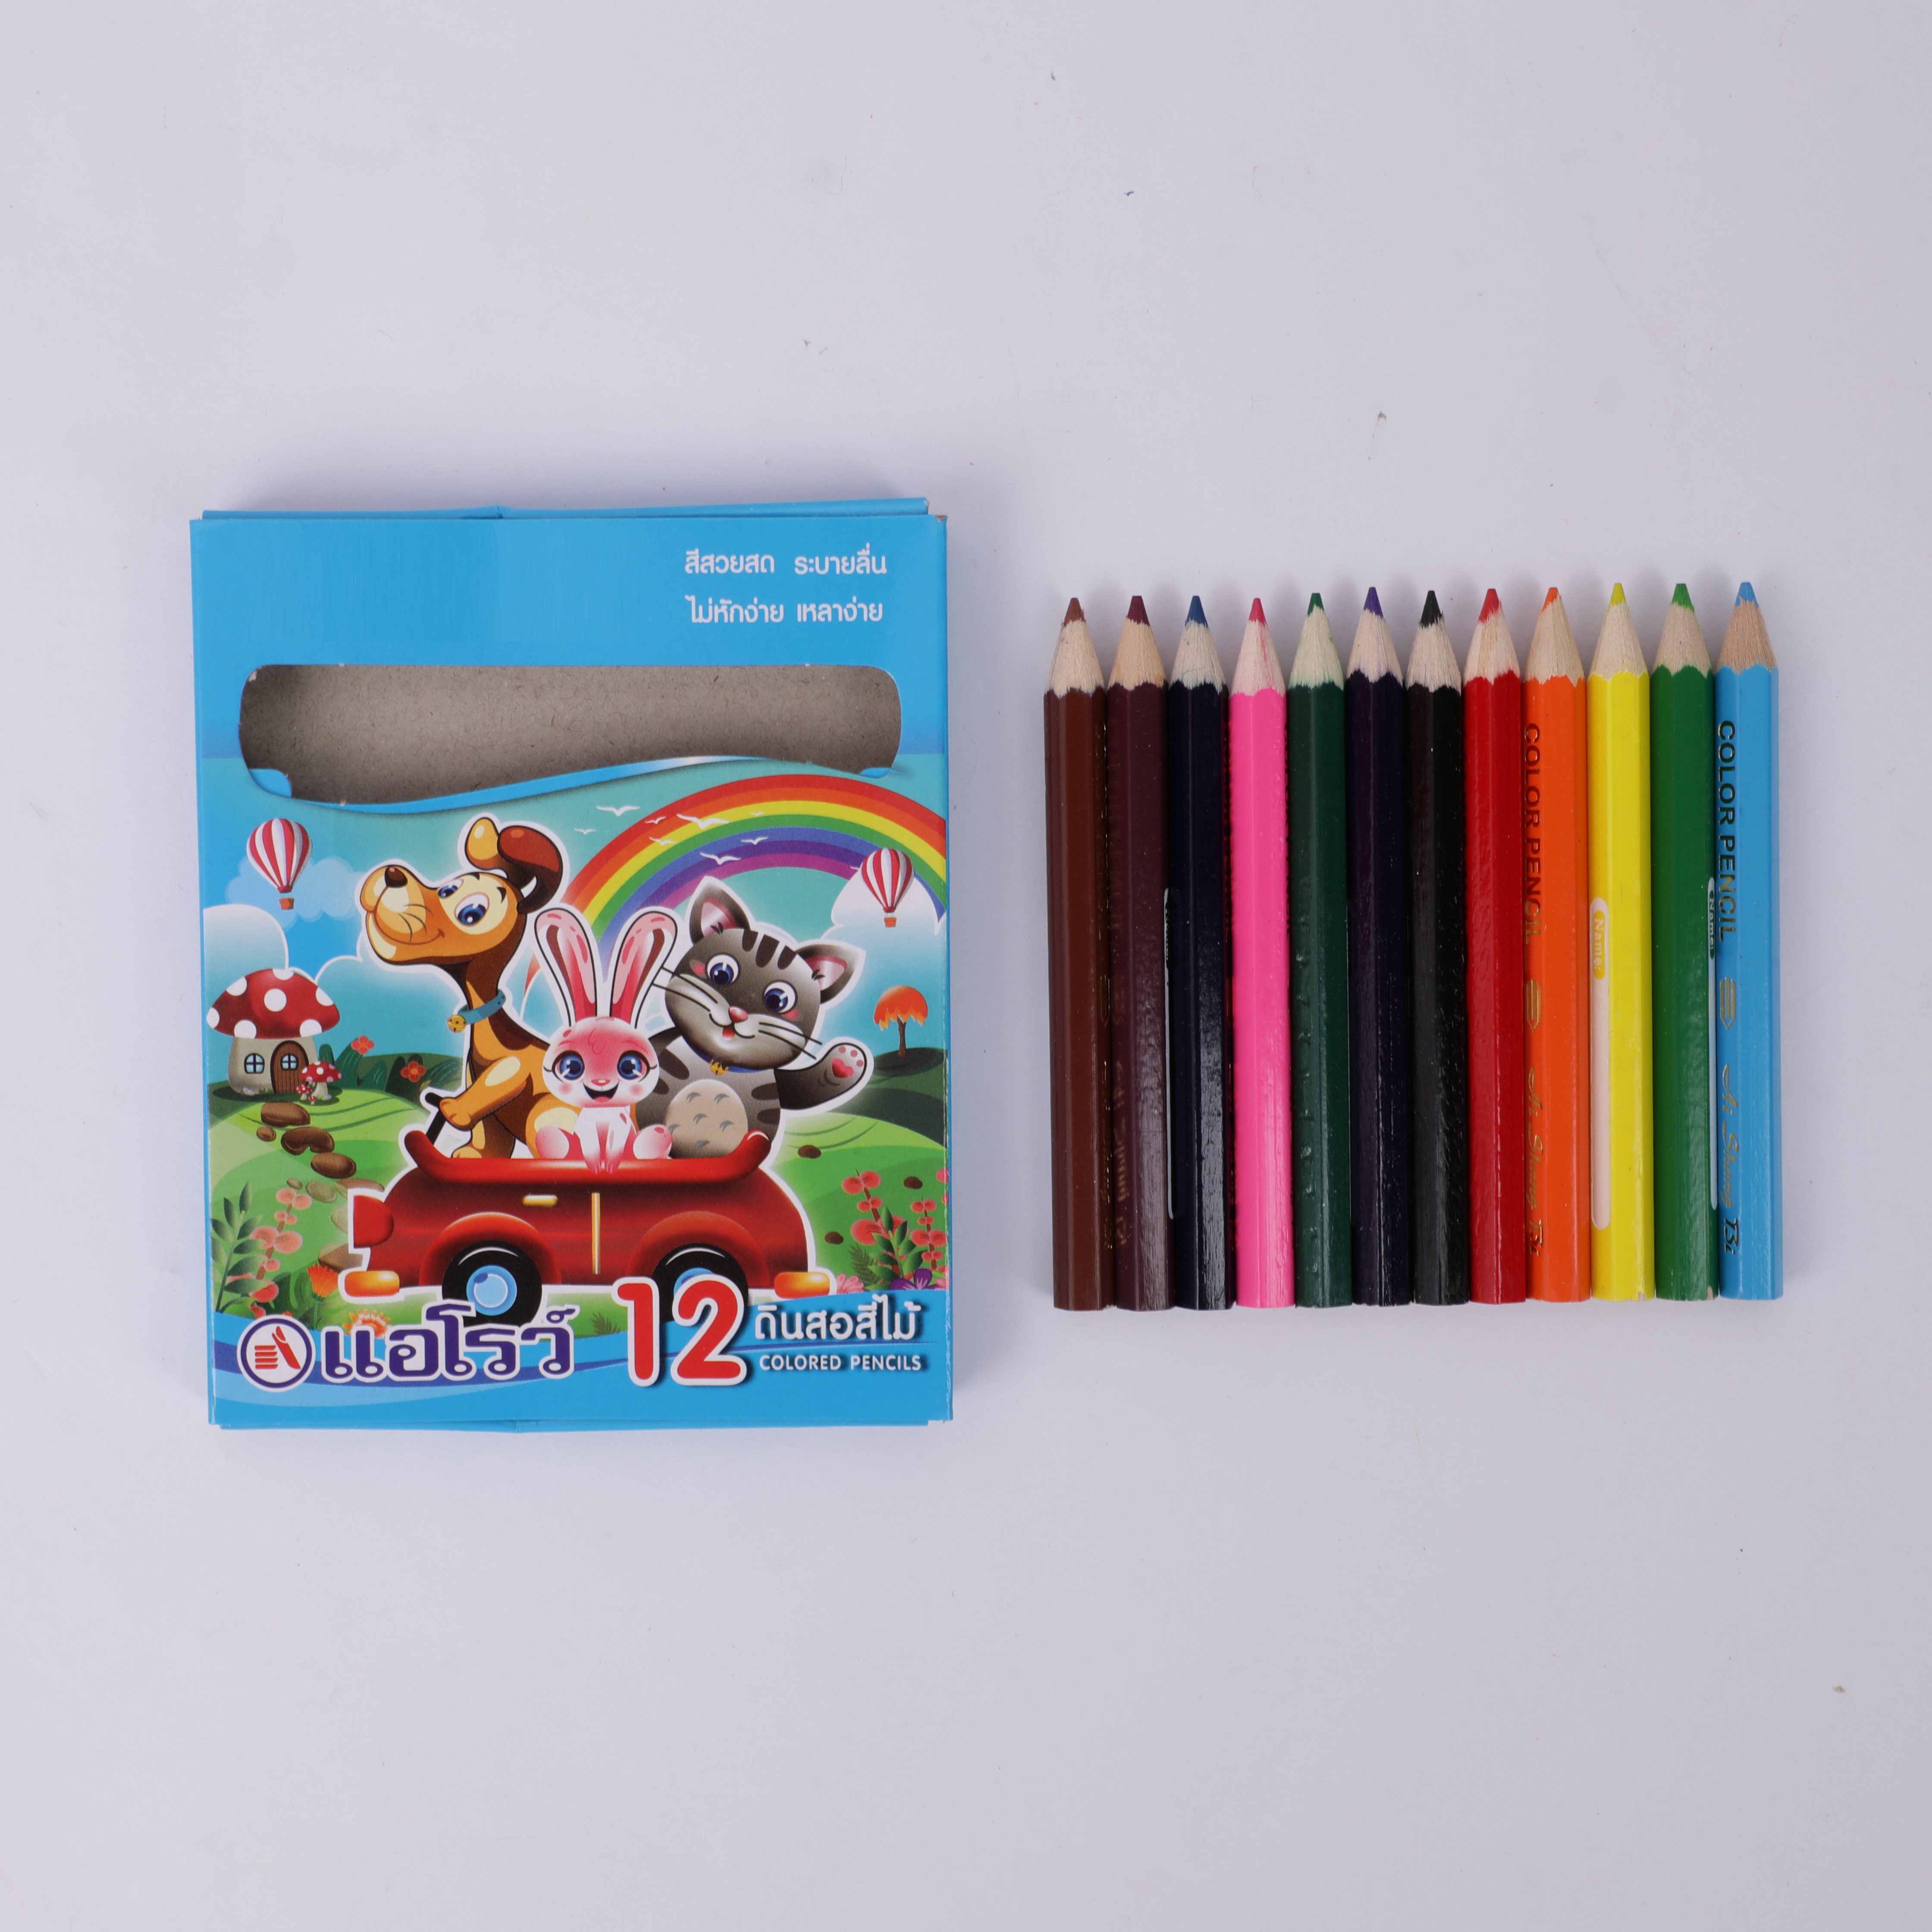 Цветные карандаши короткие BEIFA BFA02 12цв. цветная коробка